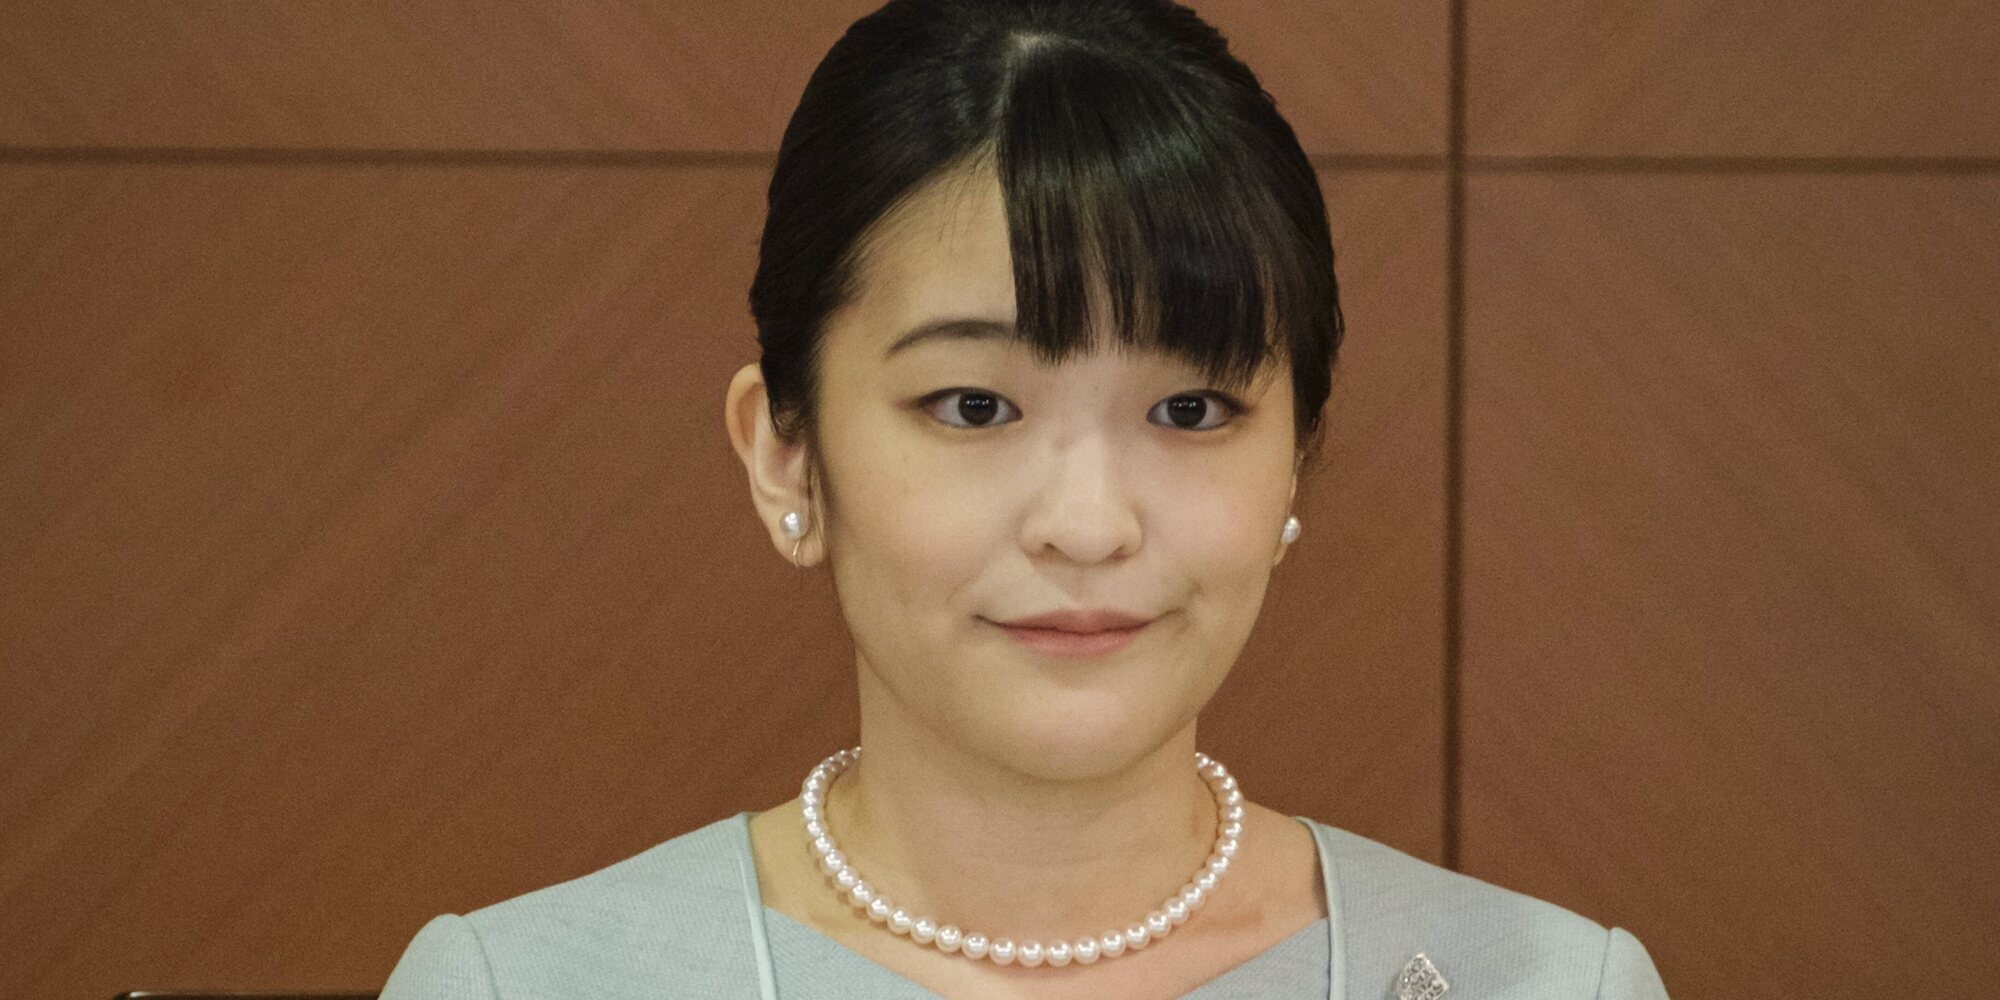 La Princesa Mako de Japón, en proceso de adaptación: se pierde en su vuelta a casa tras unas compras